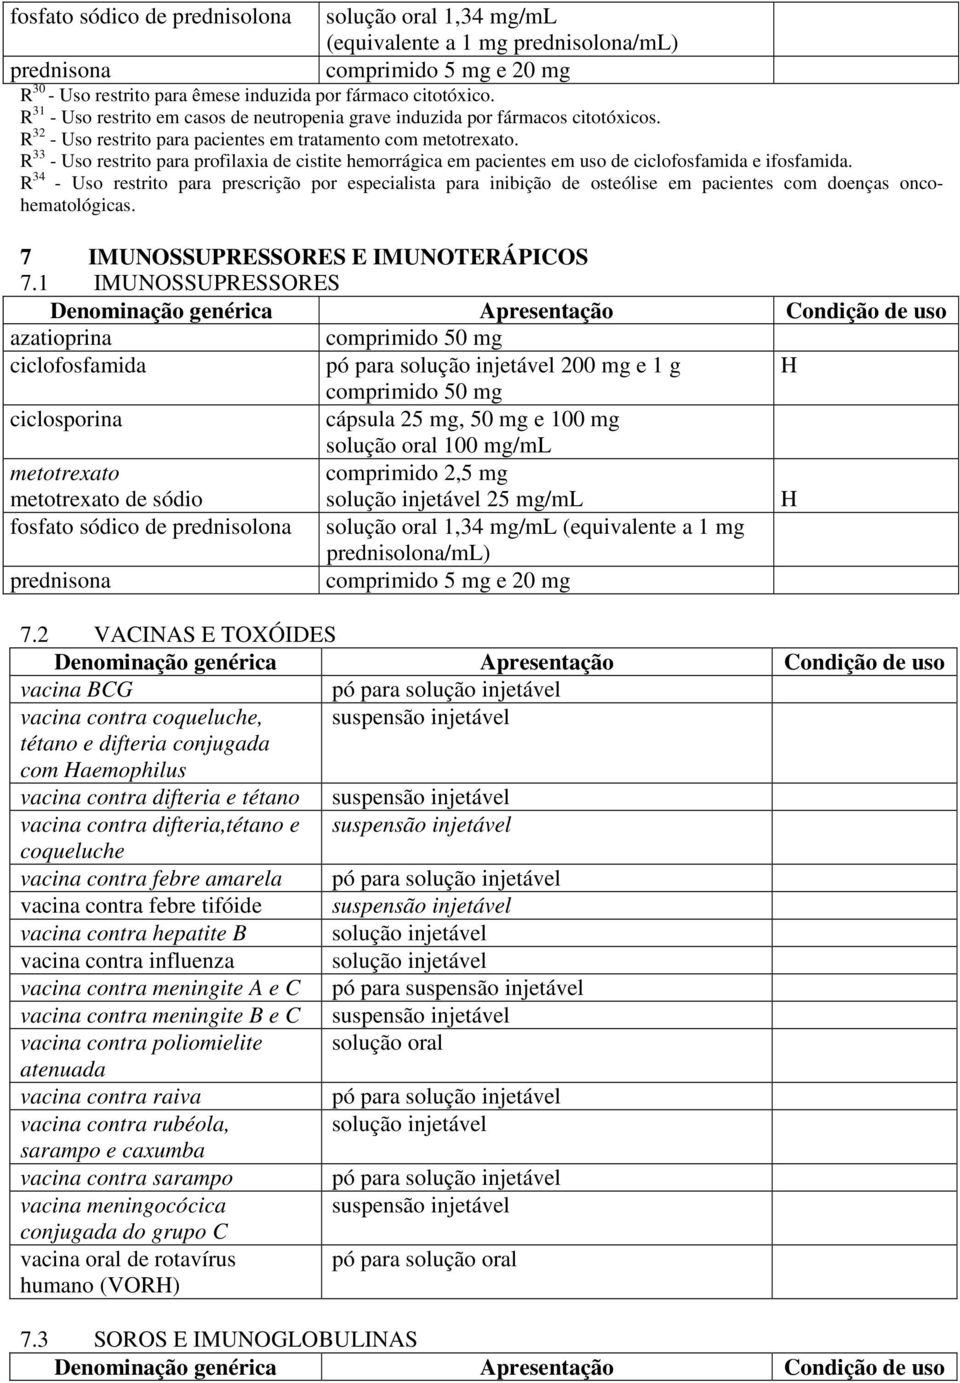 R 33 - Uso restrito para profilaxia de cistite hemorrágica em pacientes em uso de ciclofosfamida e ifosfamida.